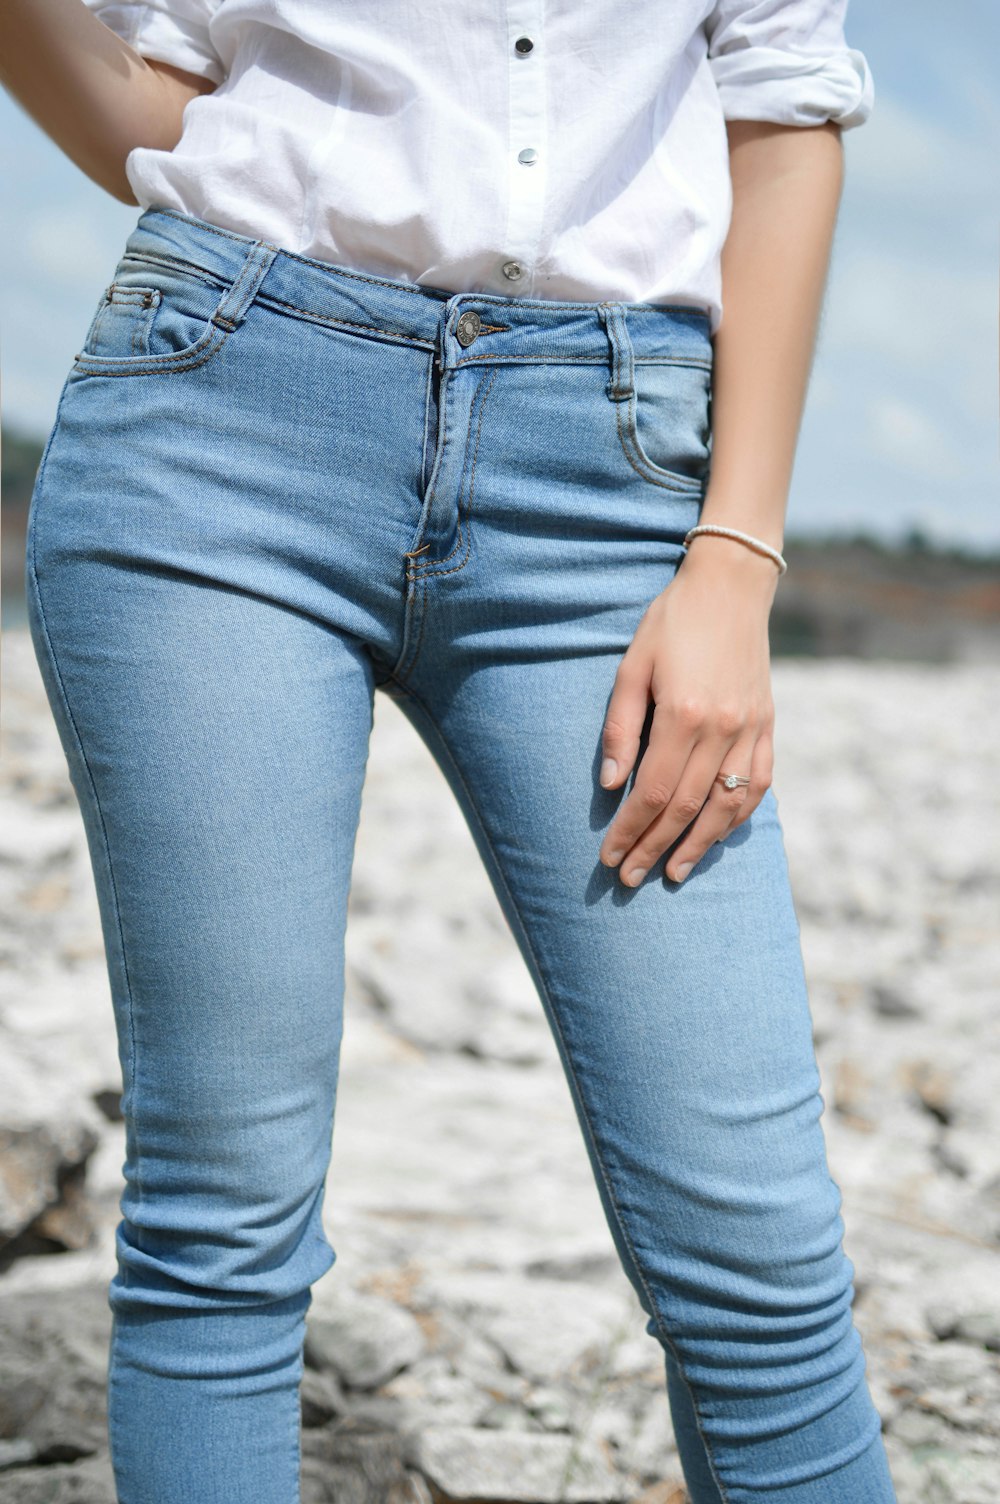 donna in piedi che indossa jeans e top bianco